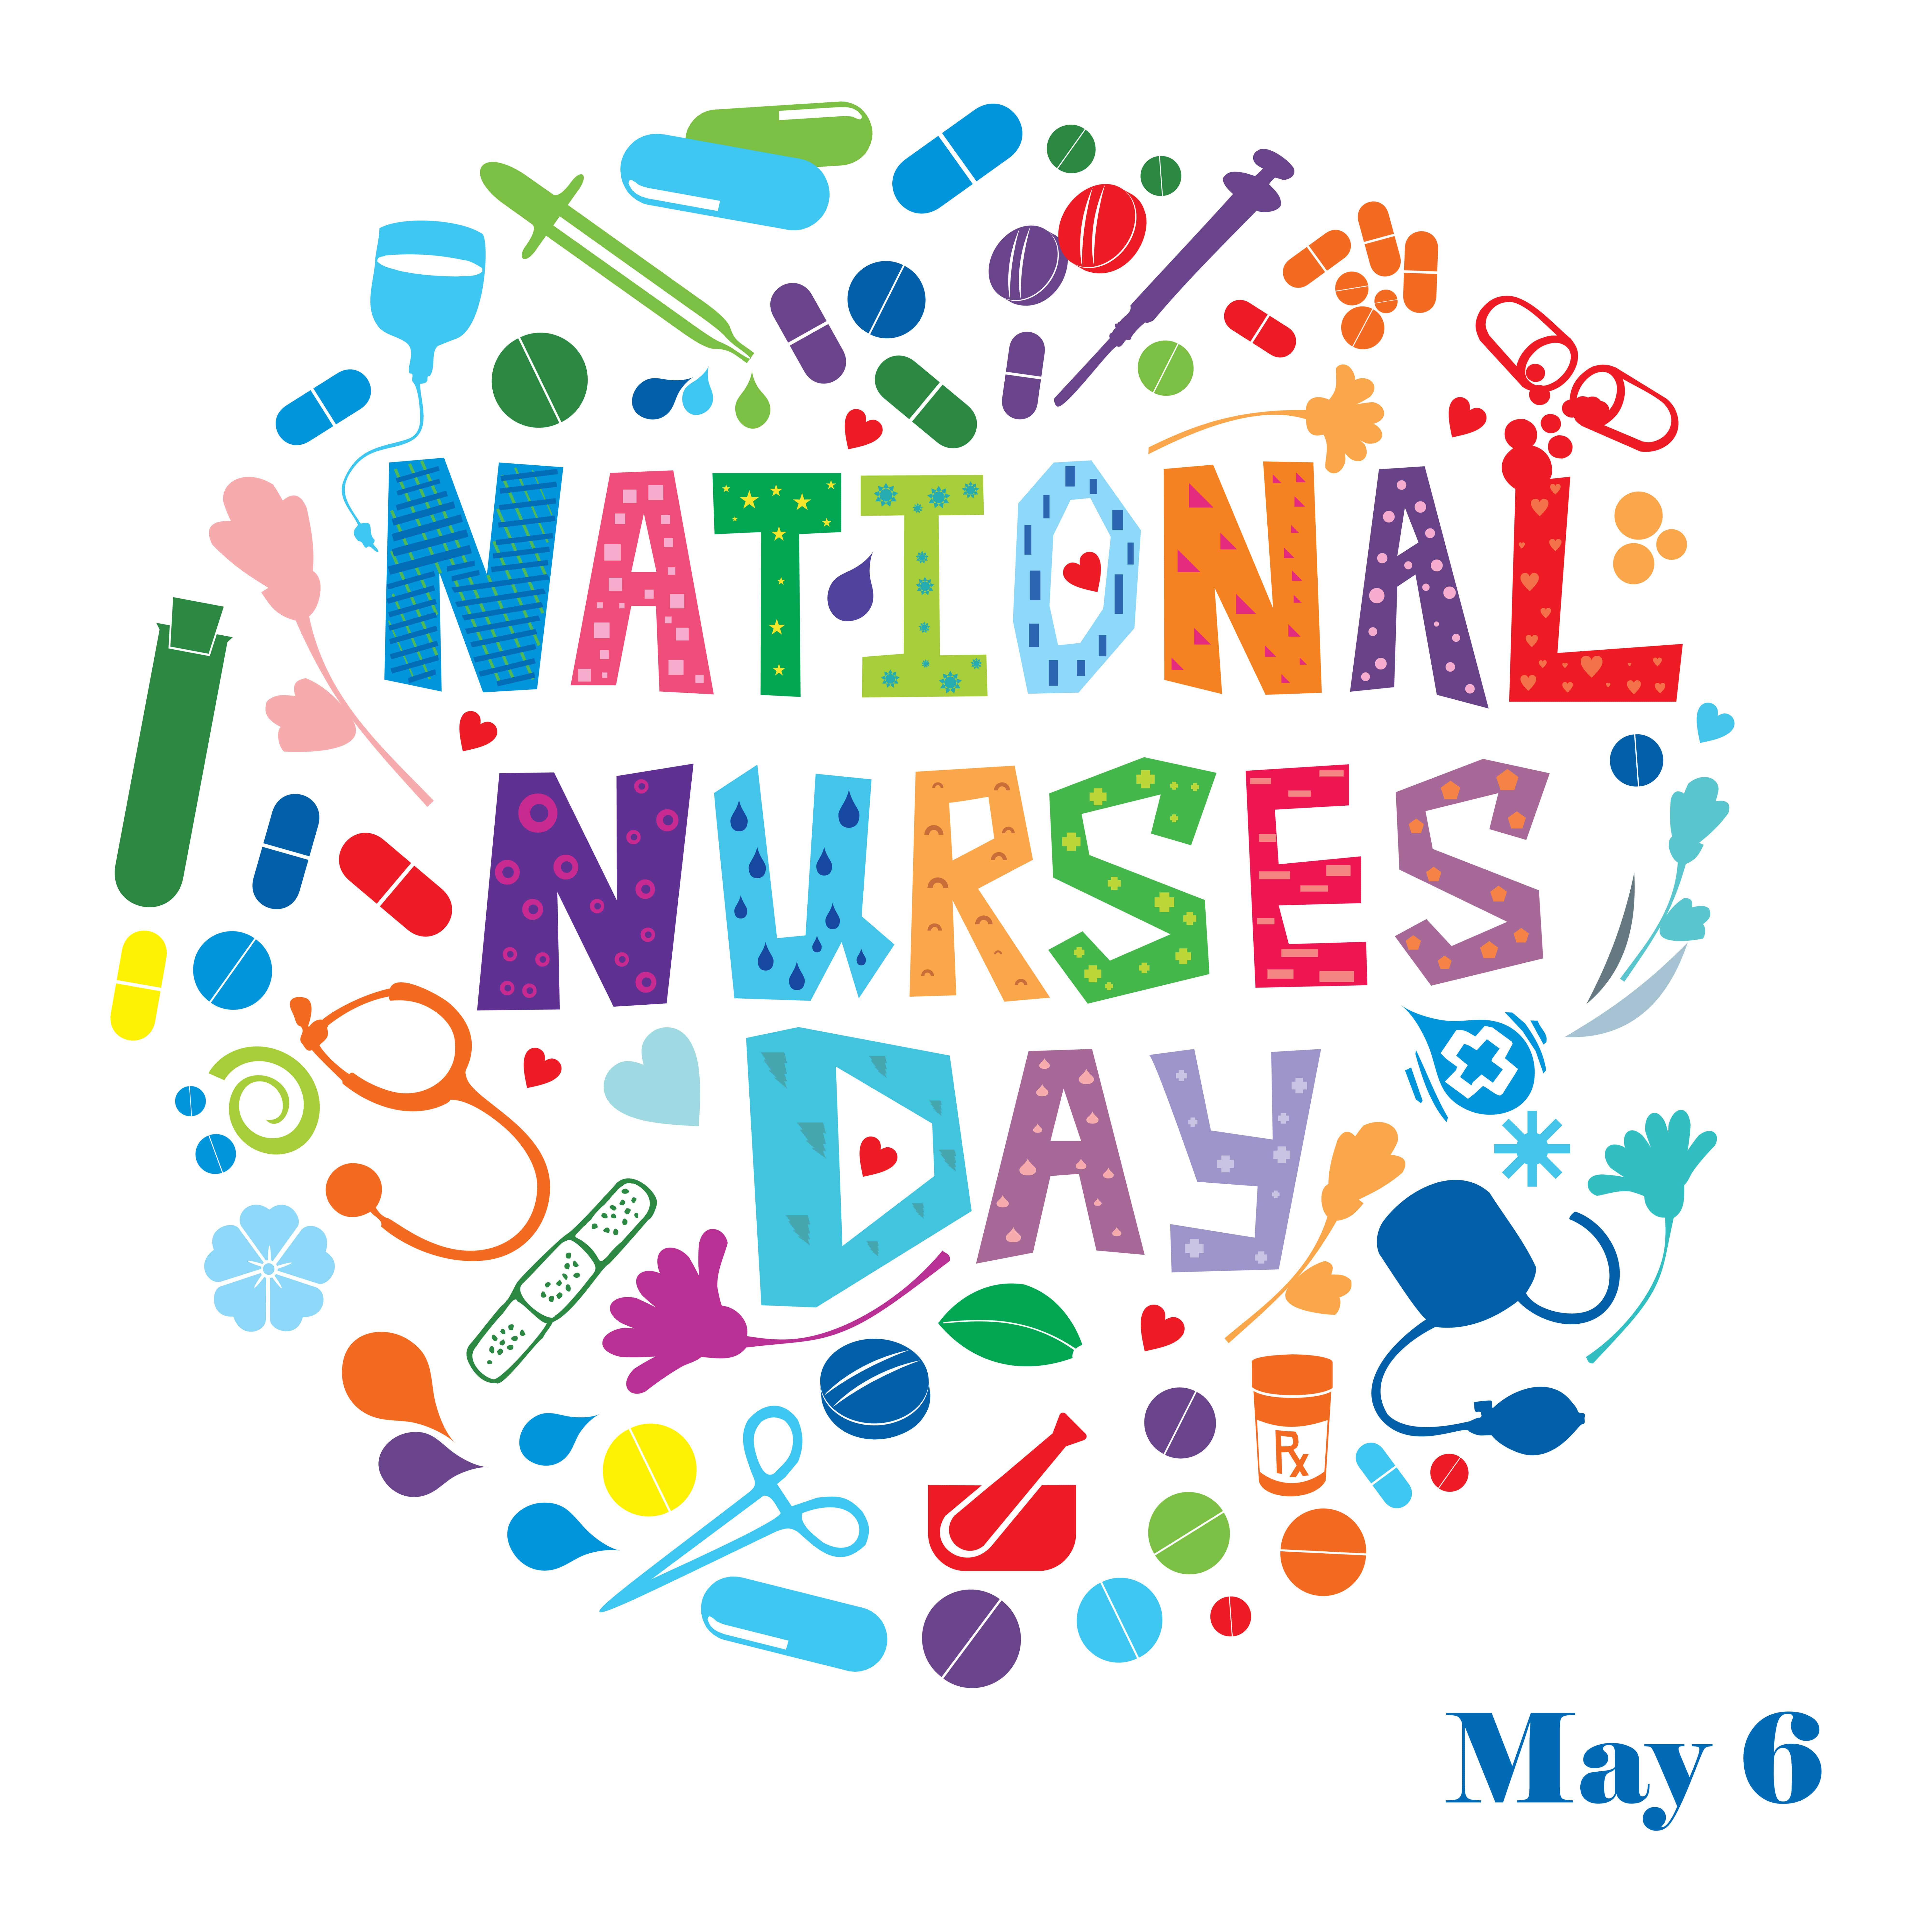 Nurses Day Theme 2020 Nursing the World to Health ICN announces theme for